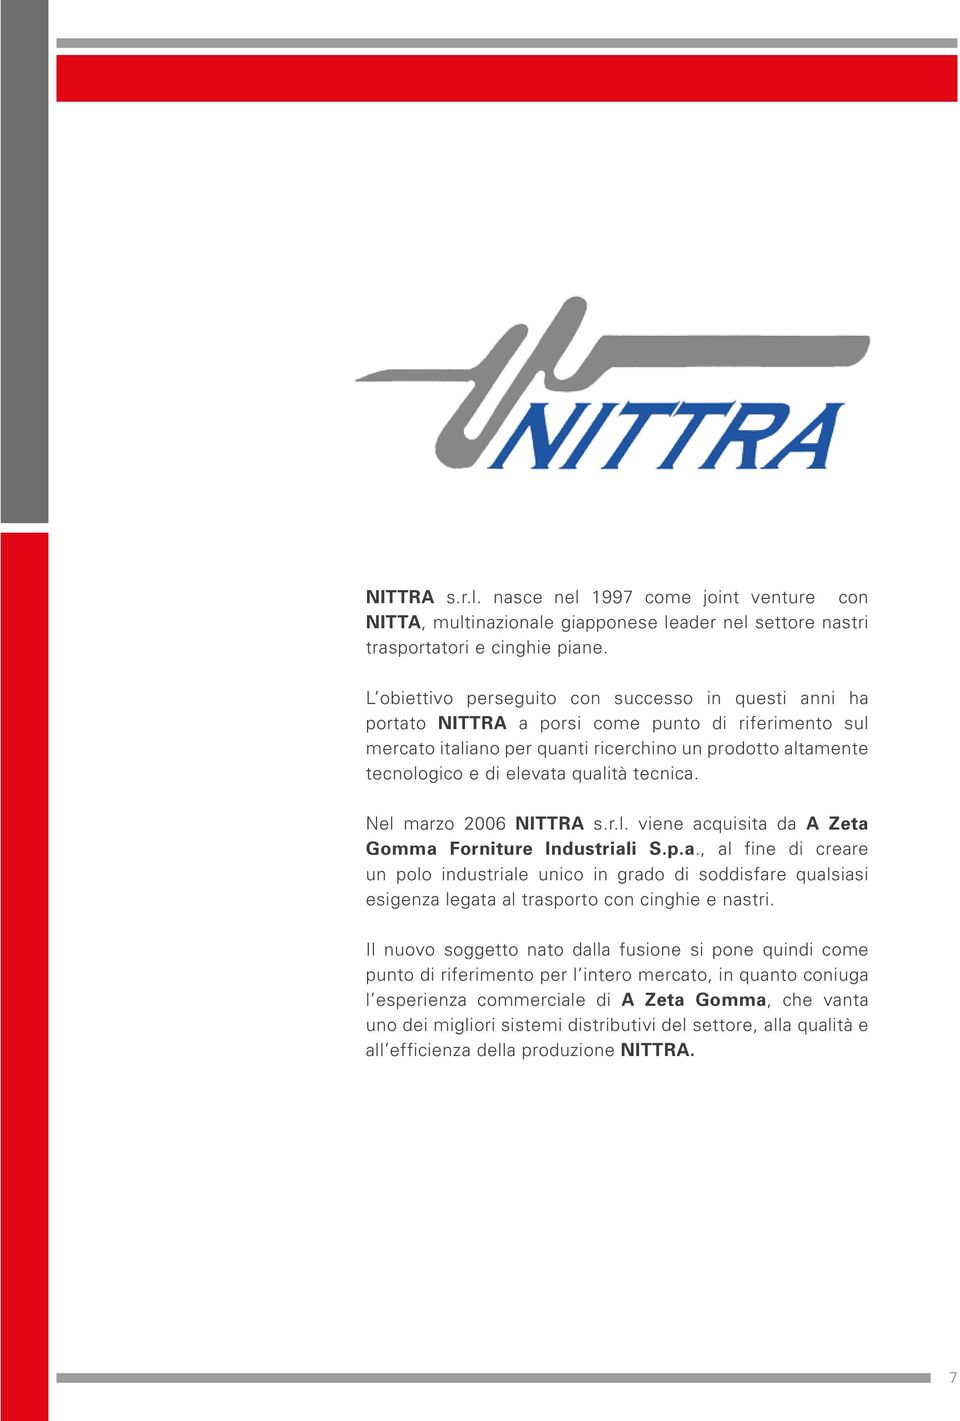 qualità tecnica. Nel marzo 2006 NITTRA s.r.l. viene acquisita da A Zeta Gomma Forniture Industriali S.p.a., al fine di creare un polo industriale unico in grado di soddisfare qualsiasi esigenza legata al trasporto con cinghie e nastri.